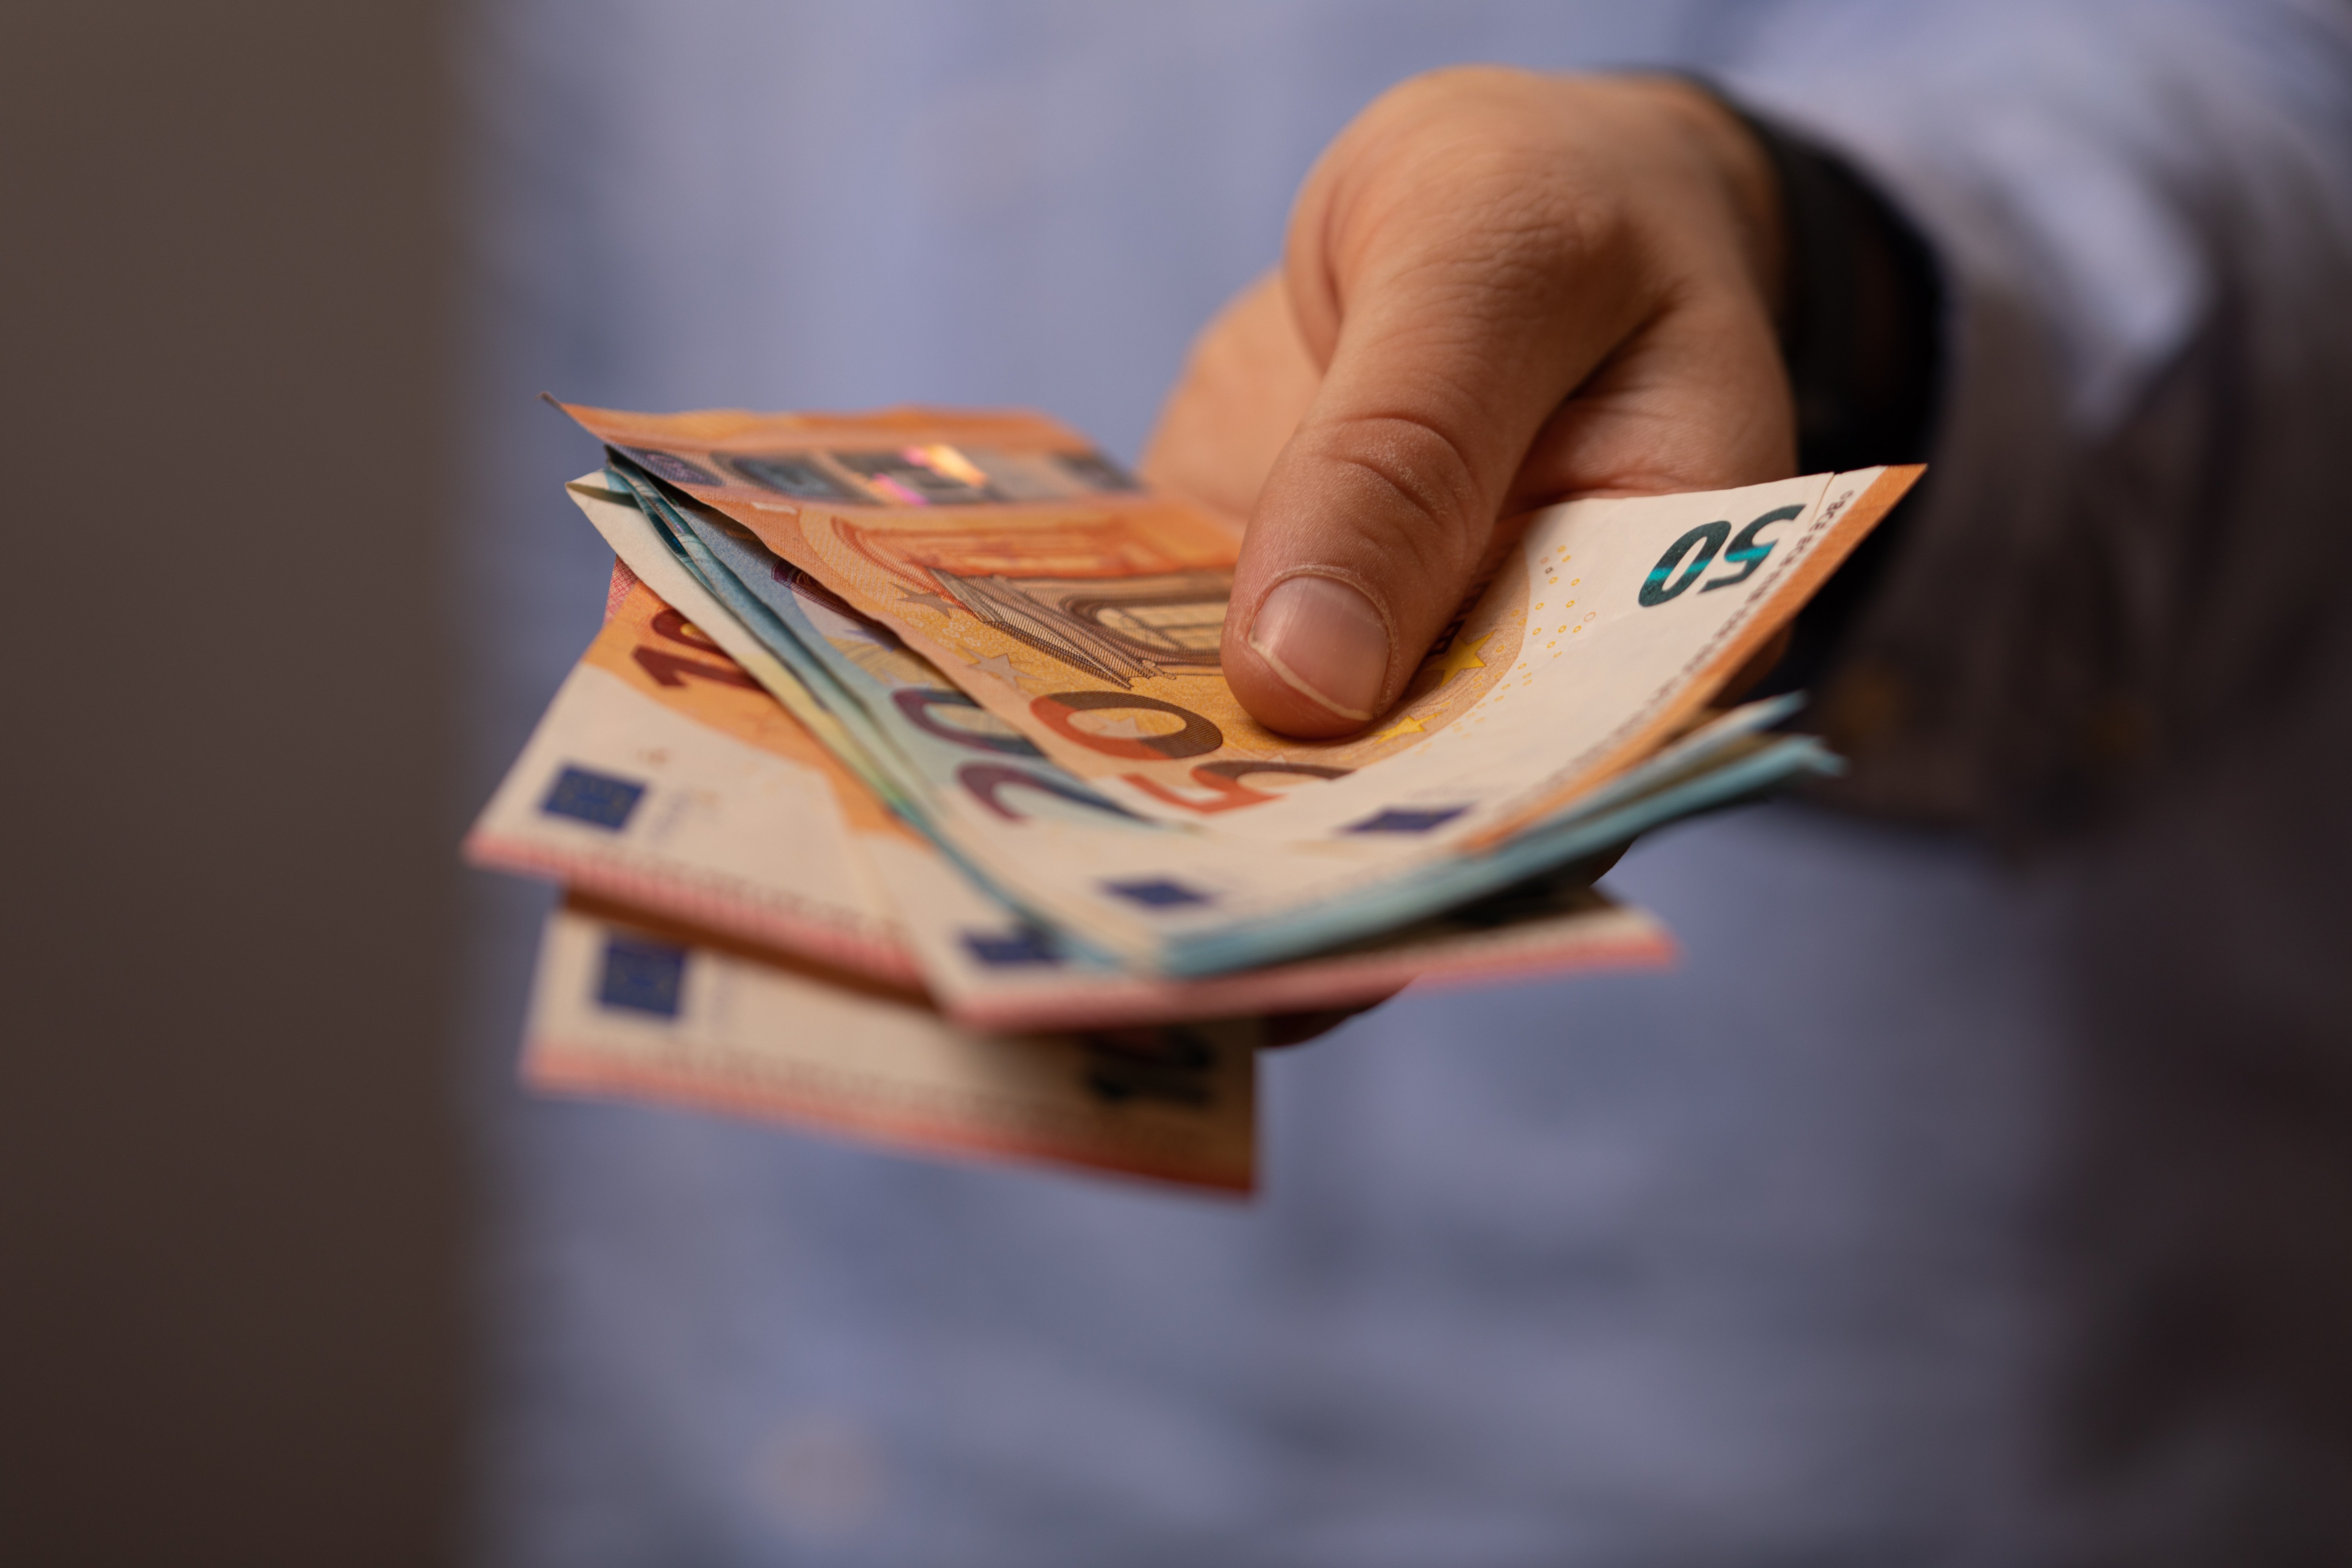 ΔΥΠΑ: Μπόνους 300 ευρώ σε επιπλέον 1.200 μη επιδοτούμενους μακροχρόνια ανέργους που κατάρτισαν Ψηφιακό Ατομικό Σχέδιο Δράσης